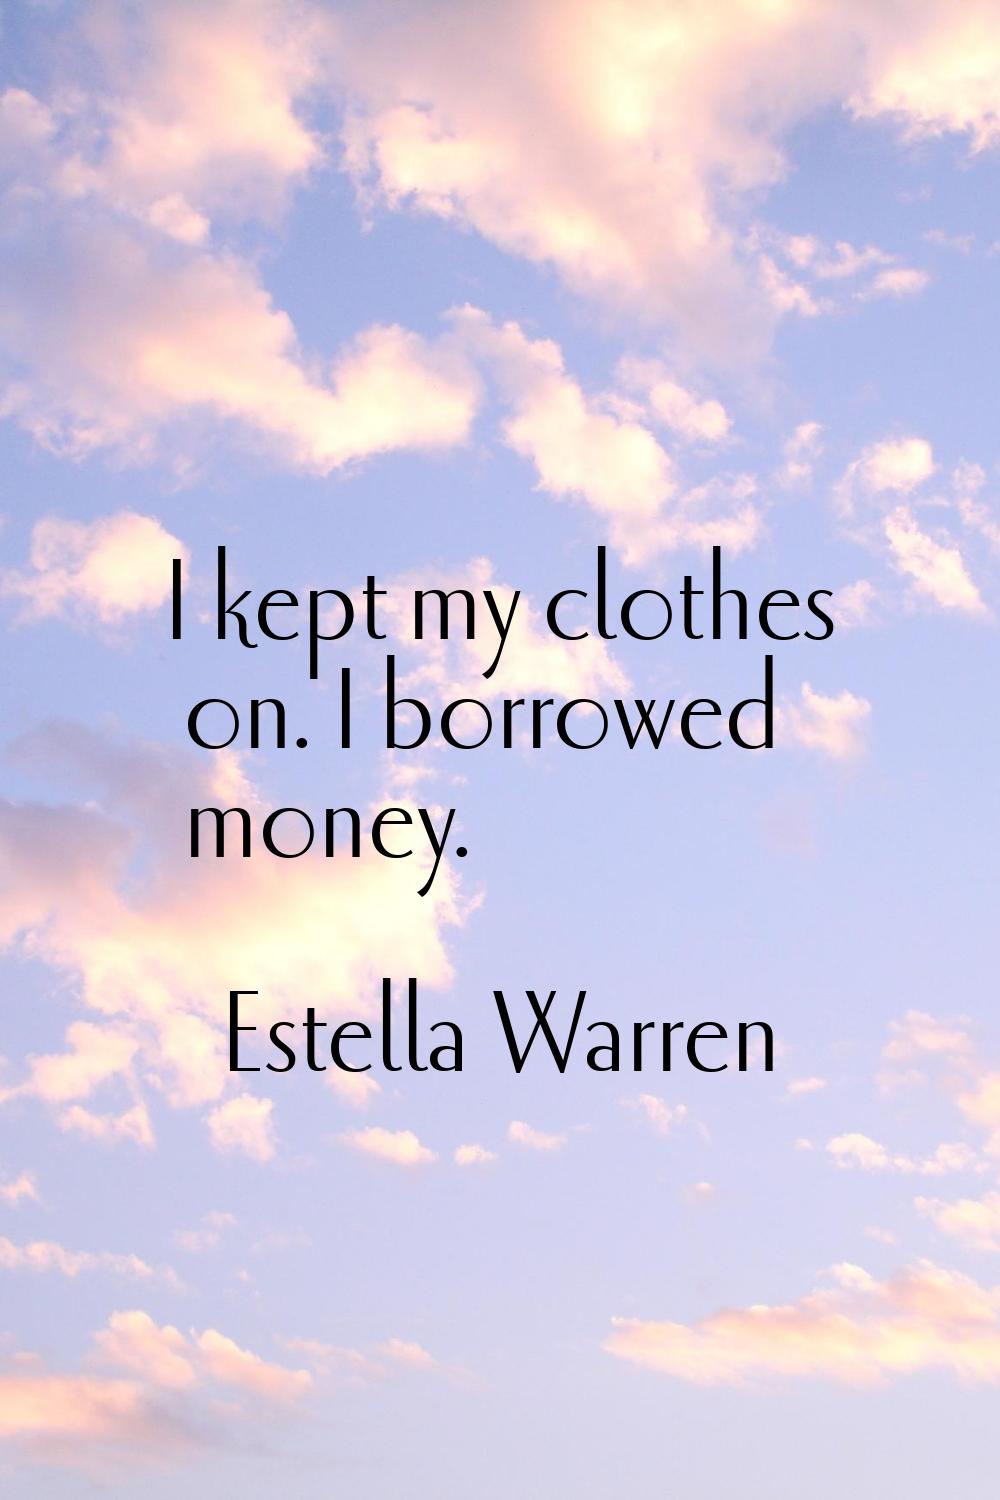 I kept my clothes on. I borrowed money.